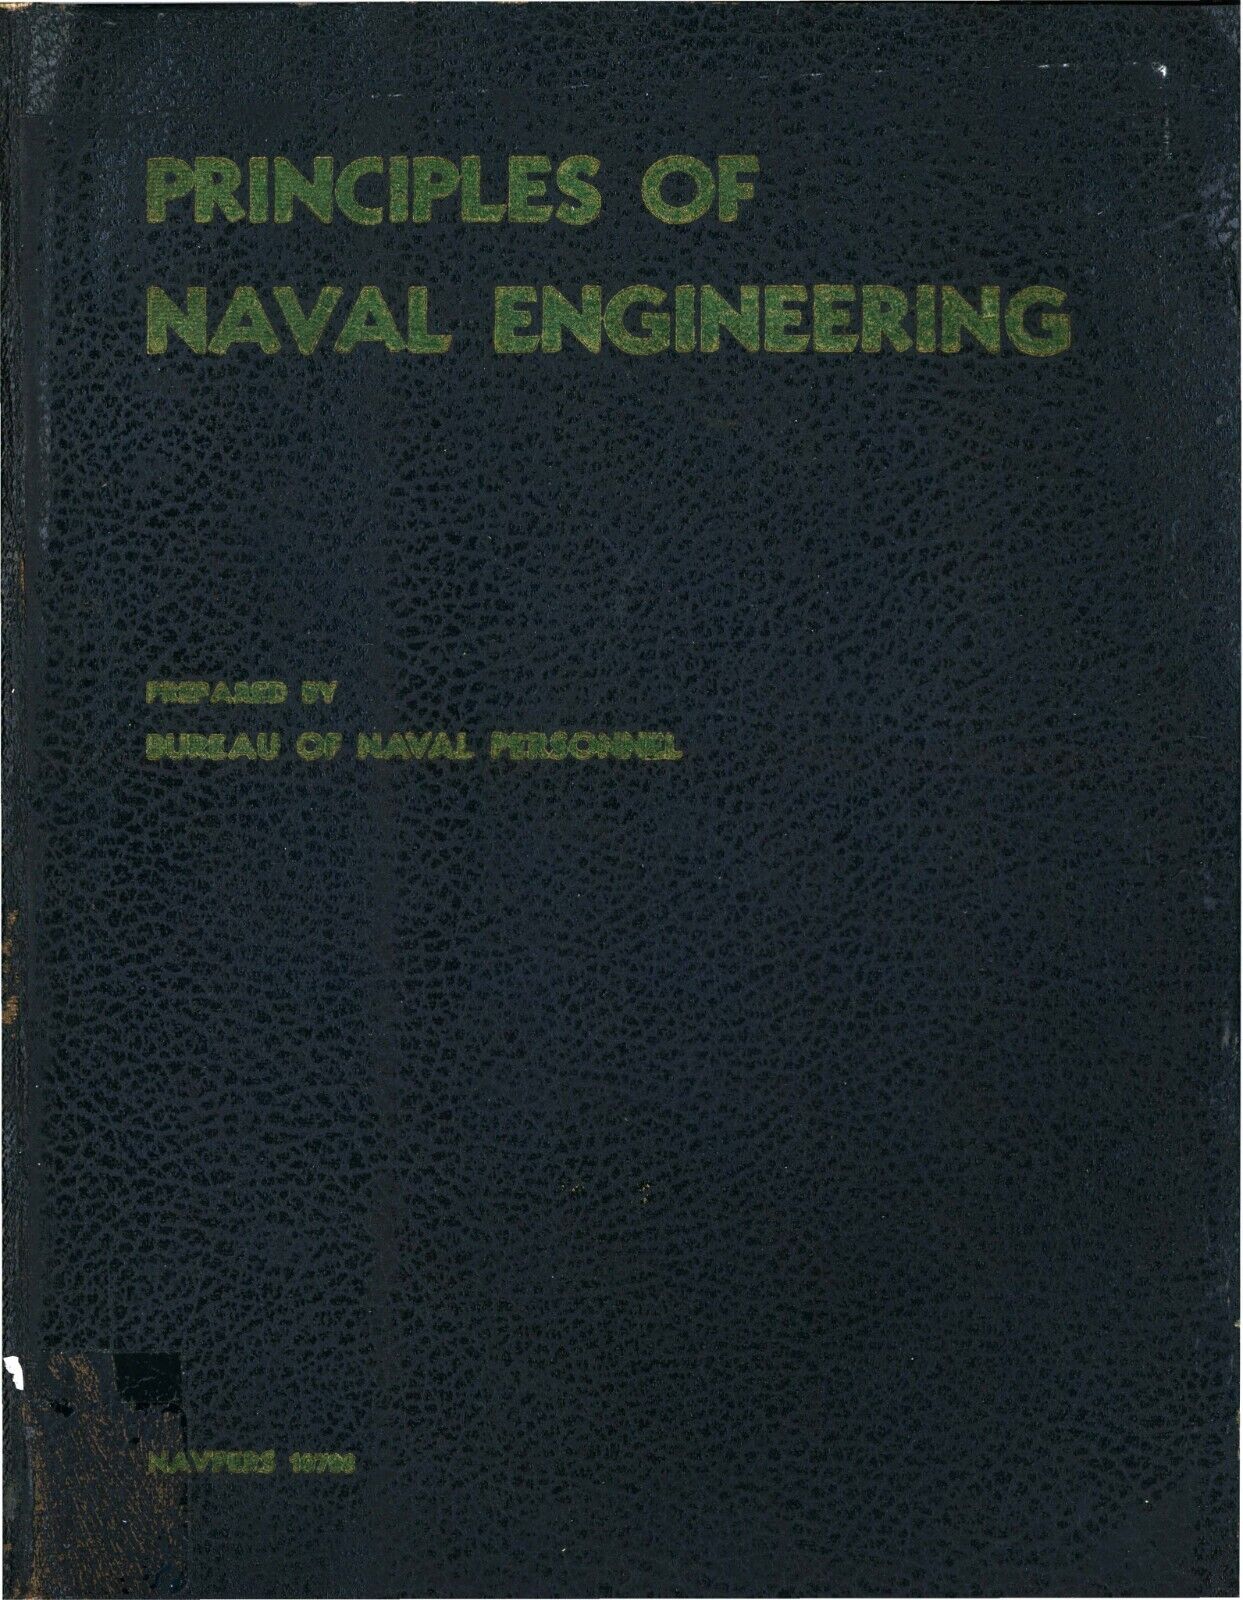 REPRINT PRINCIPLES OF NAVAL ENGINEERING NAVPERS 10788 1958 600p